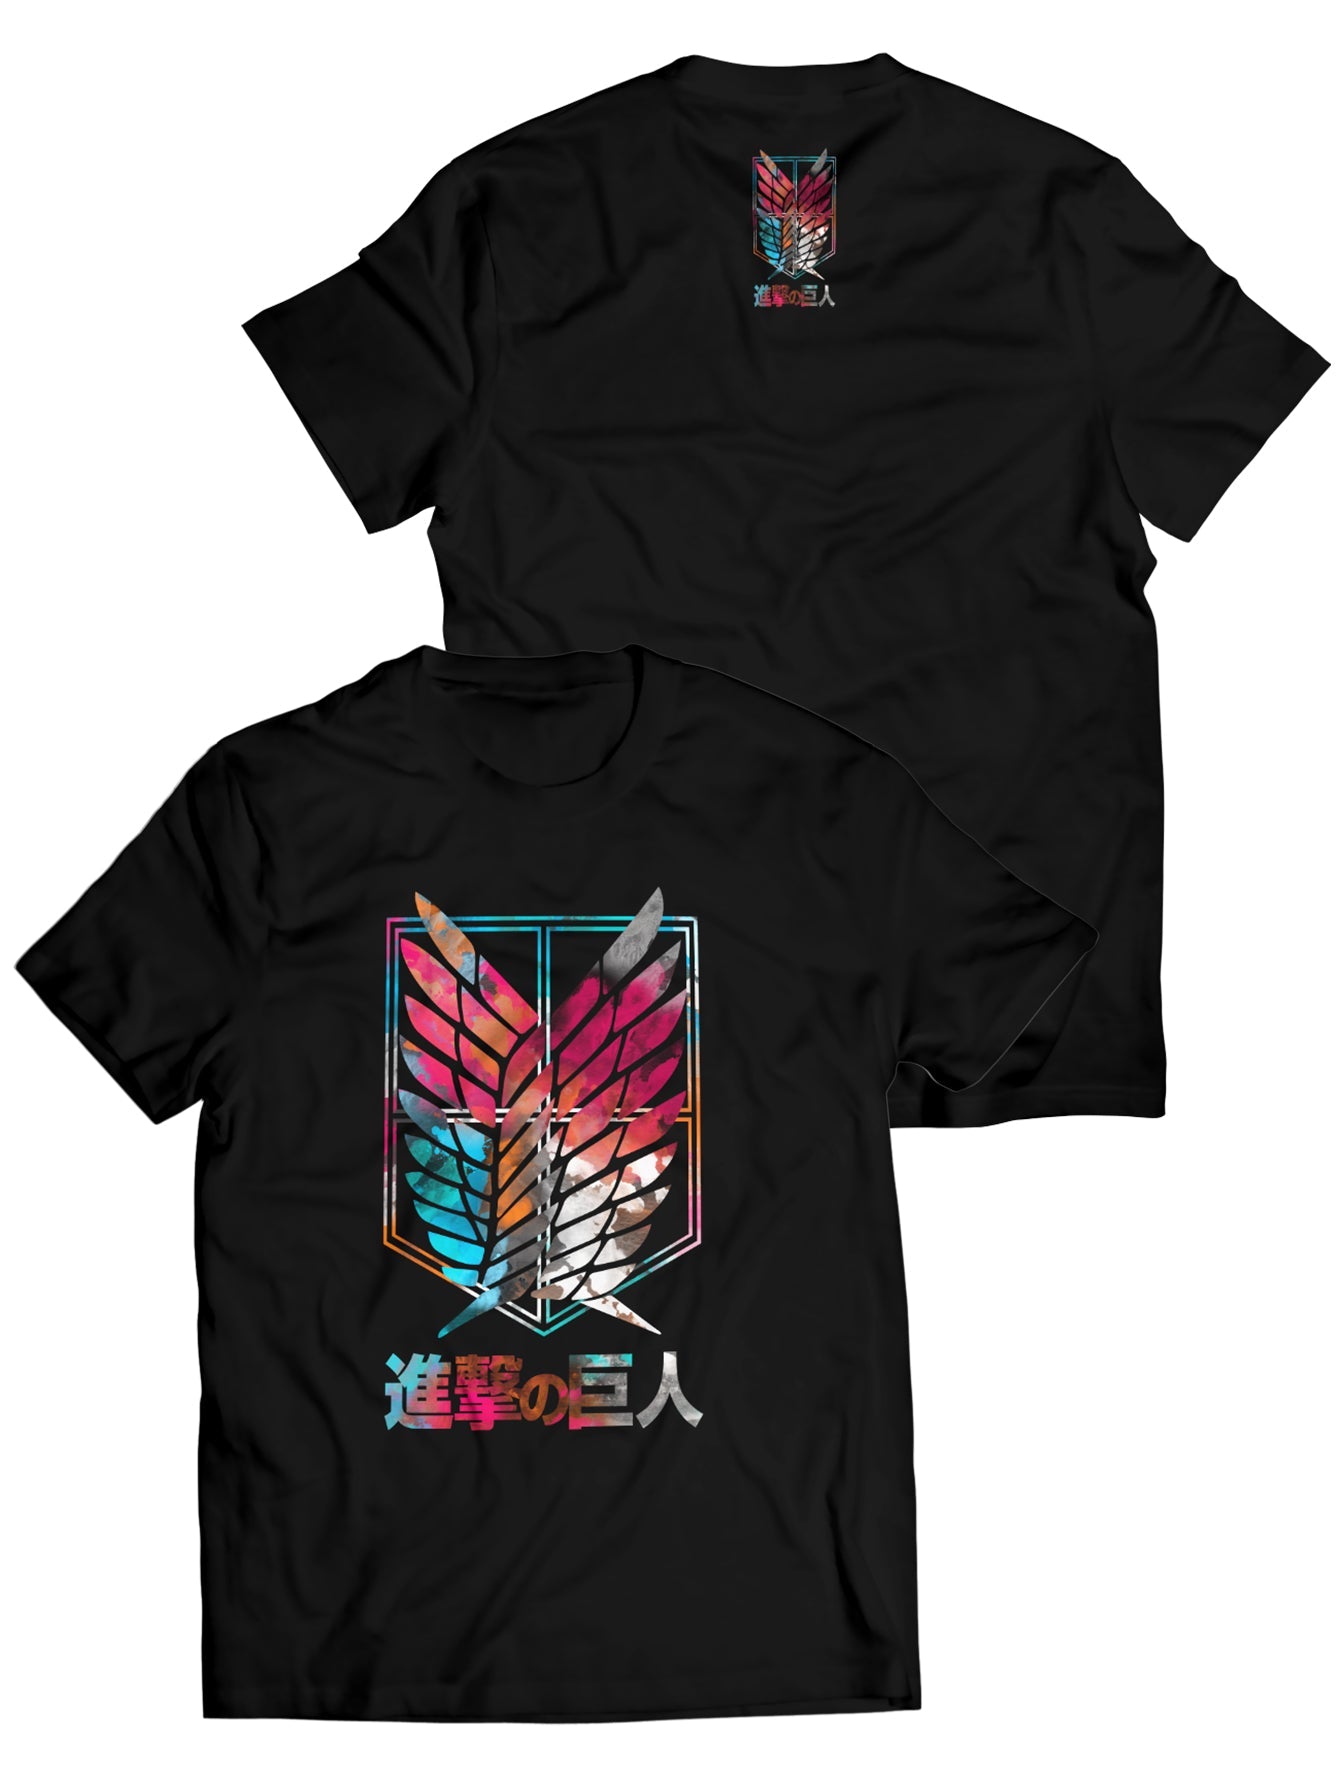 Fandomaniax - AOT Survey Corps Unisex T-Shirt